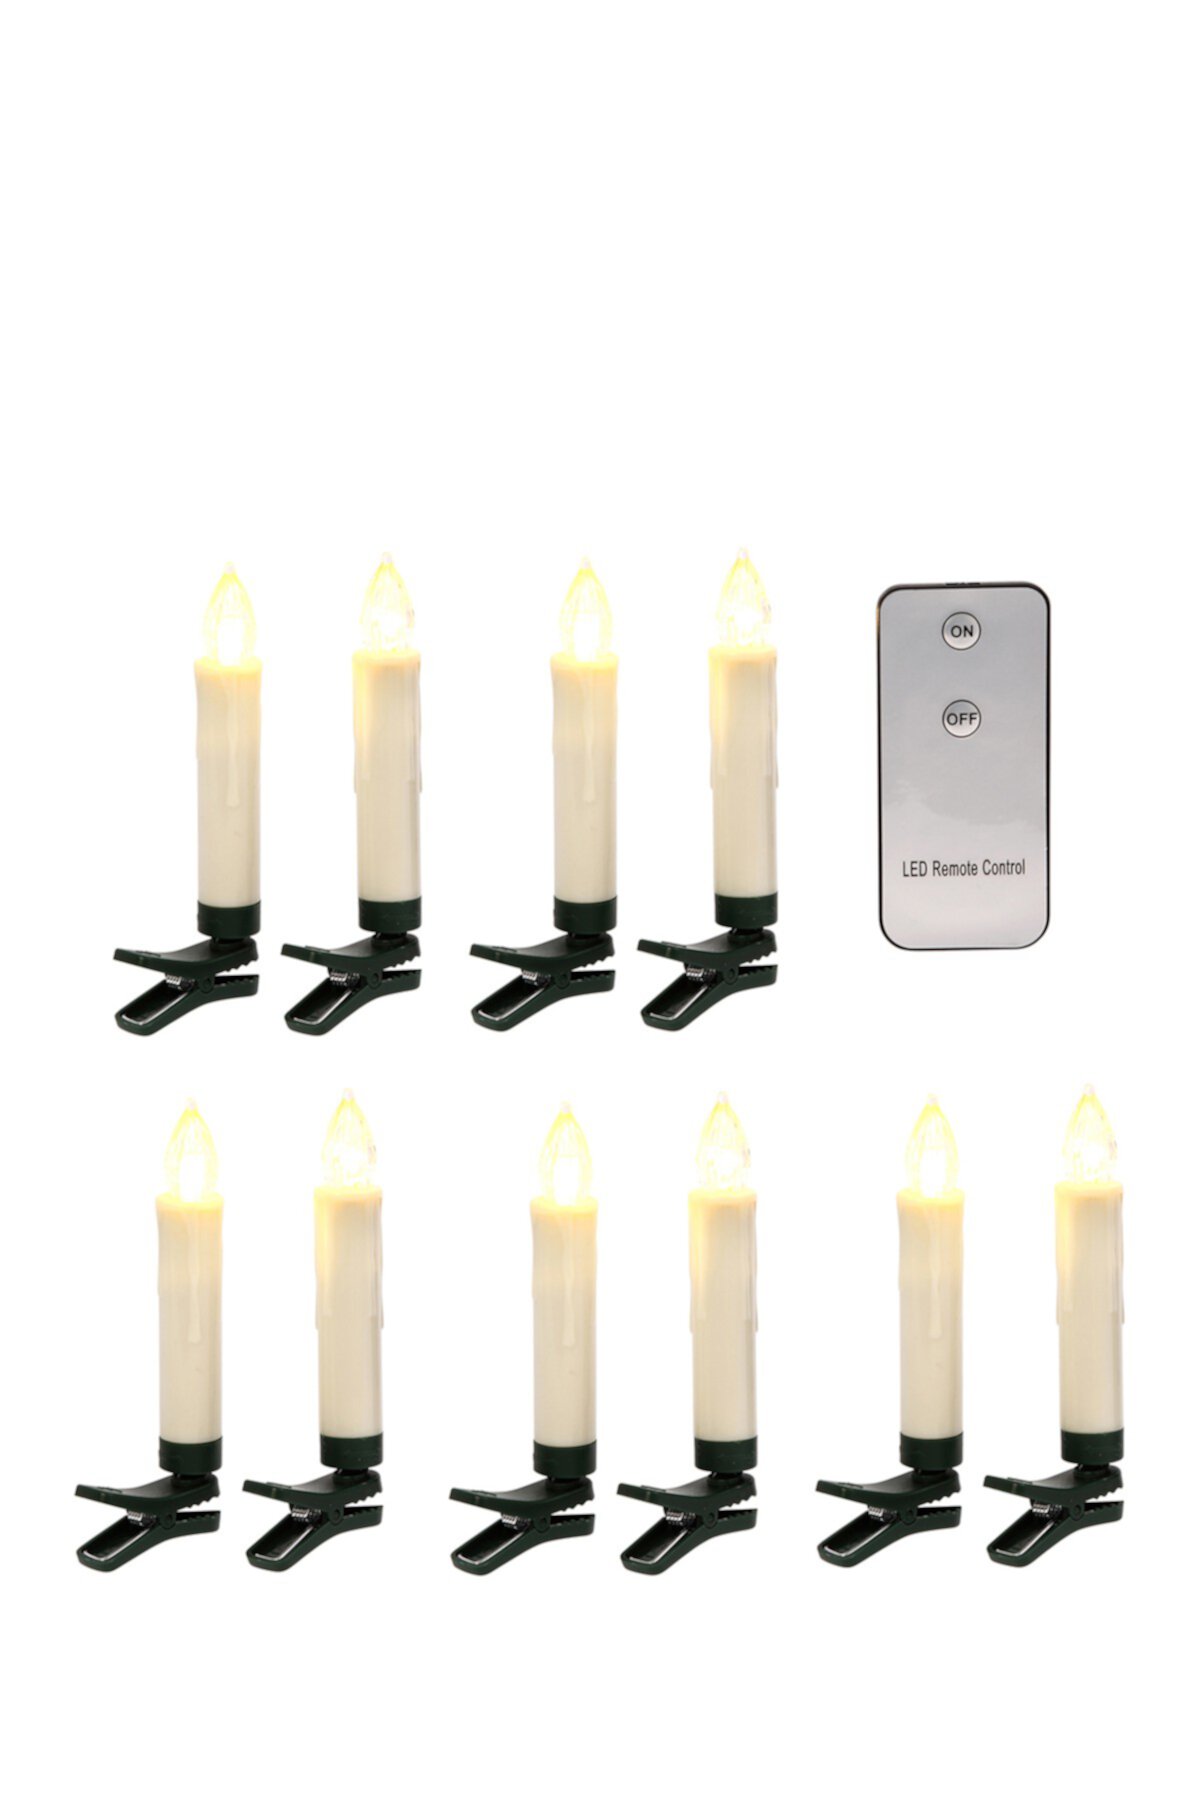 Пластиковые светодиодные конические свечи бисквитного цвета на батарейках — набор из 10 шт. Gerson Company